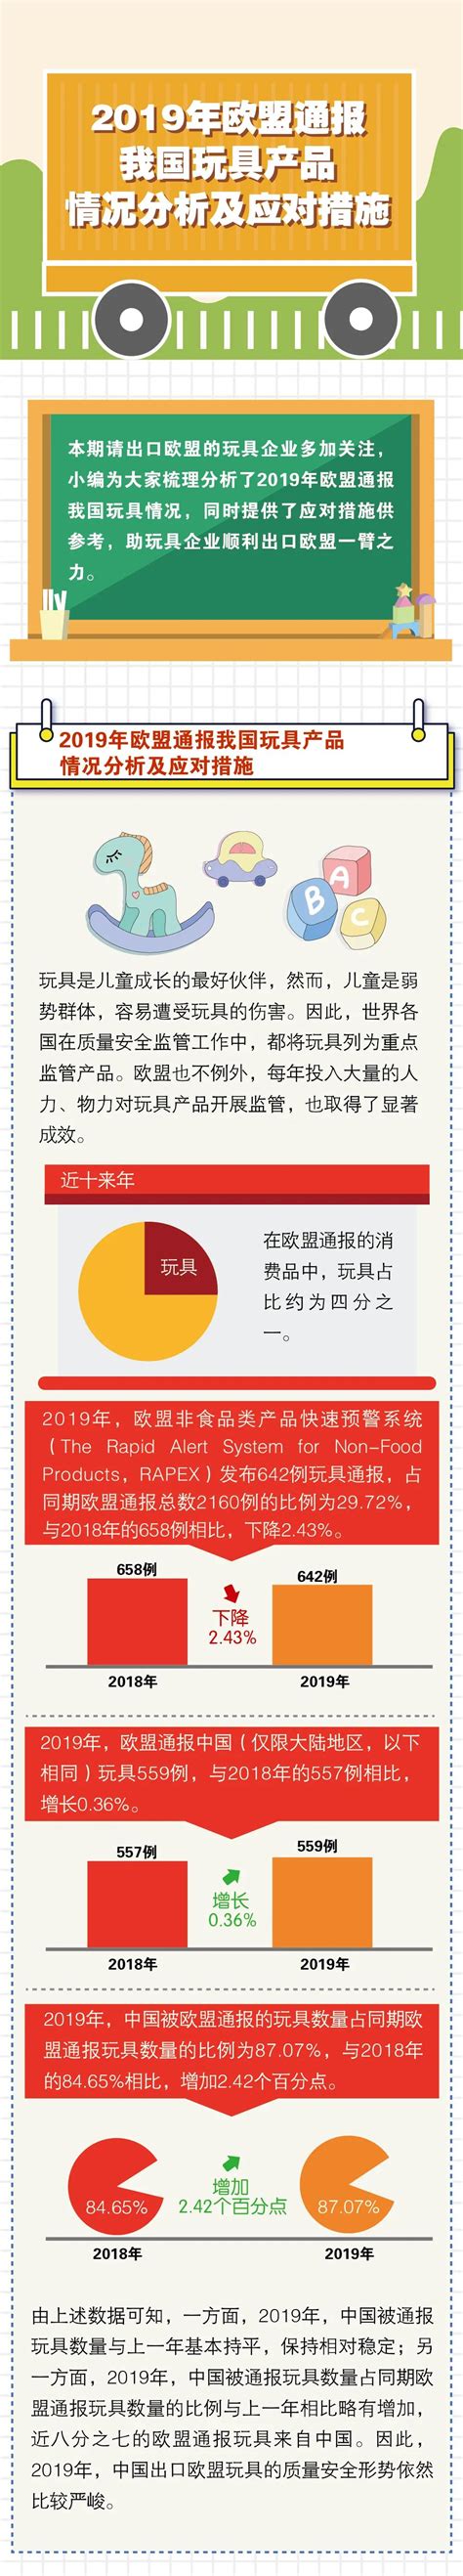 玩具行业对外贸易分析——以广东省为例的分析-毕业论文 | 什么值得下